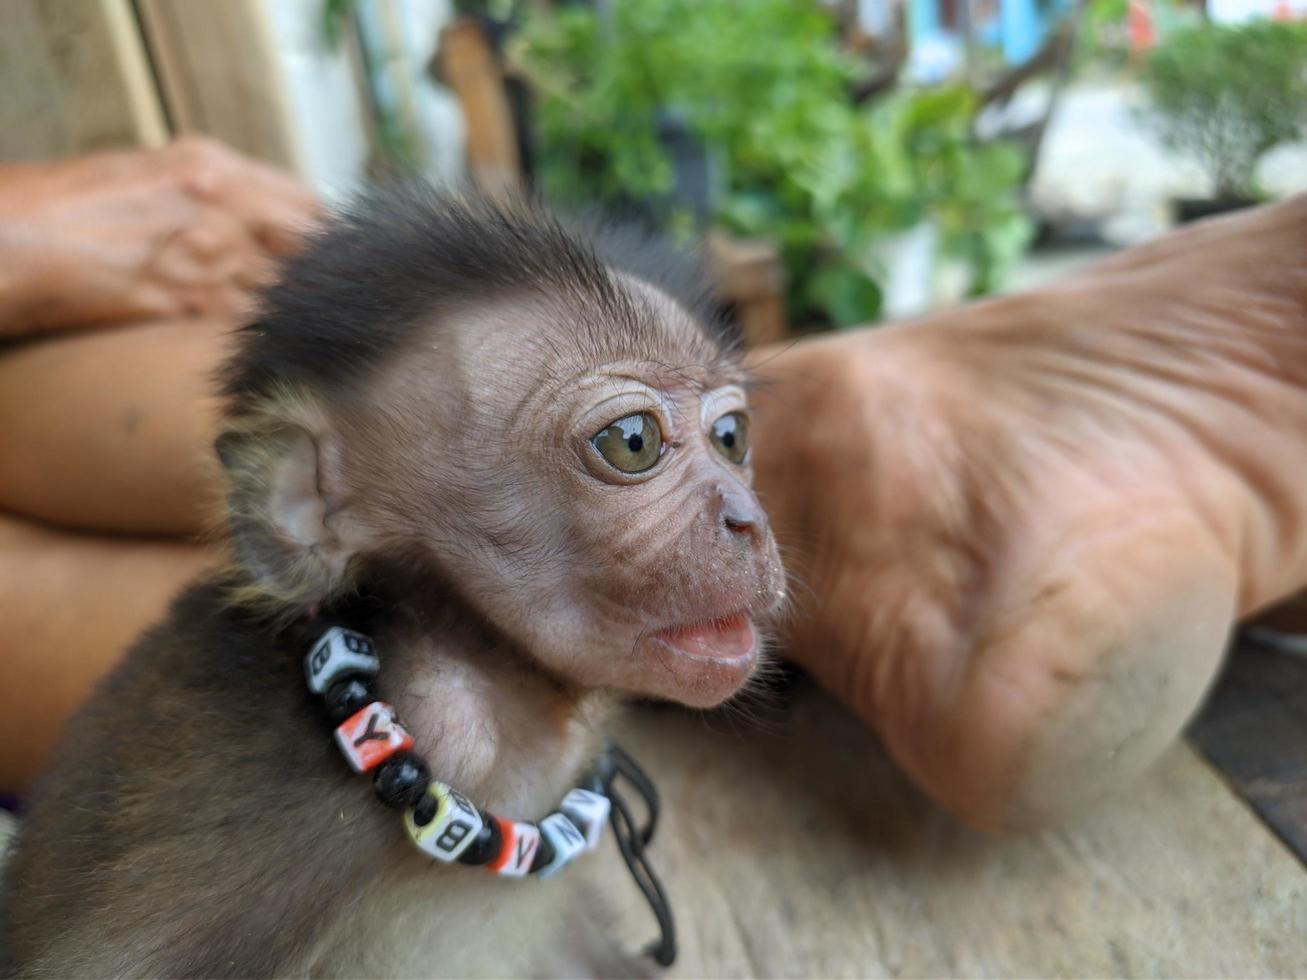 baby aap gescheiden van haar moeder en geadopteerd door mensen, behoud foto